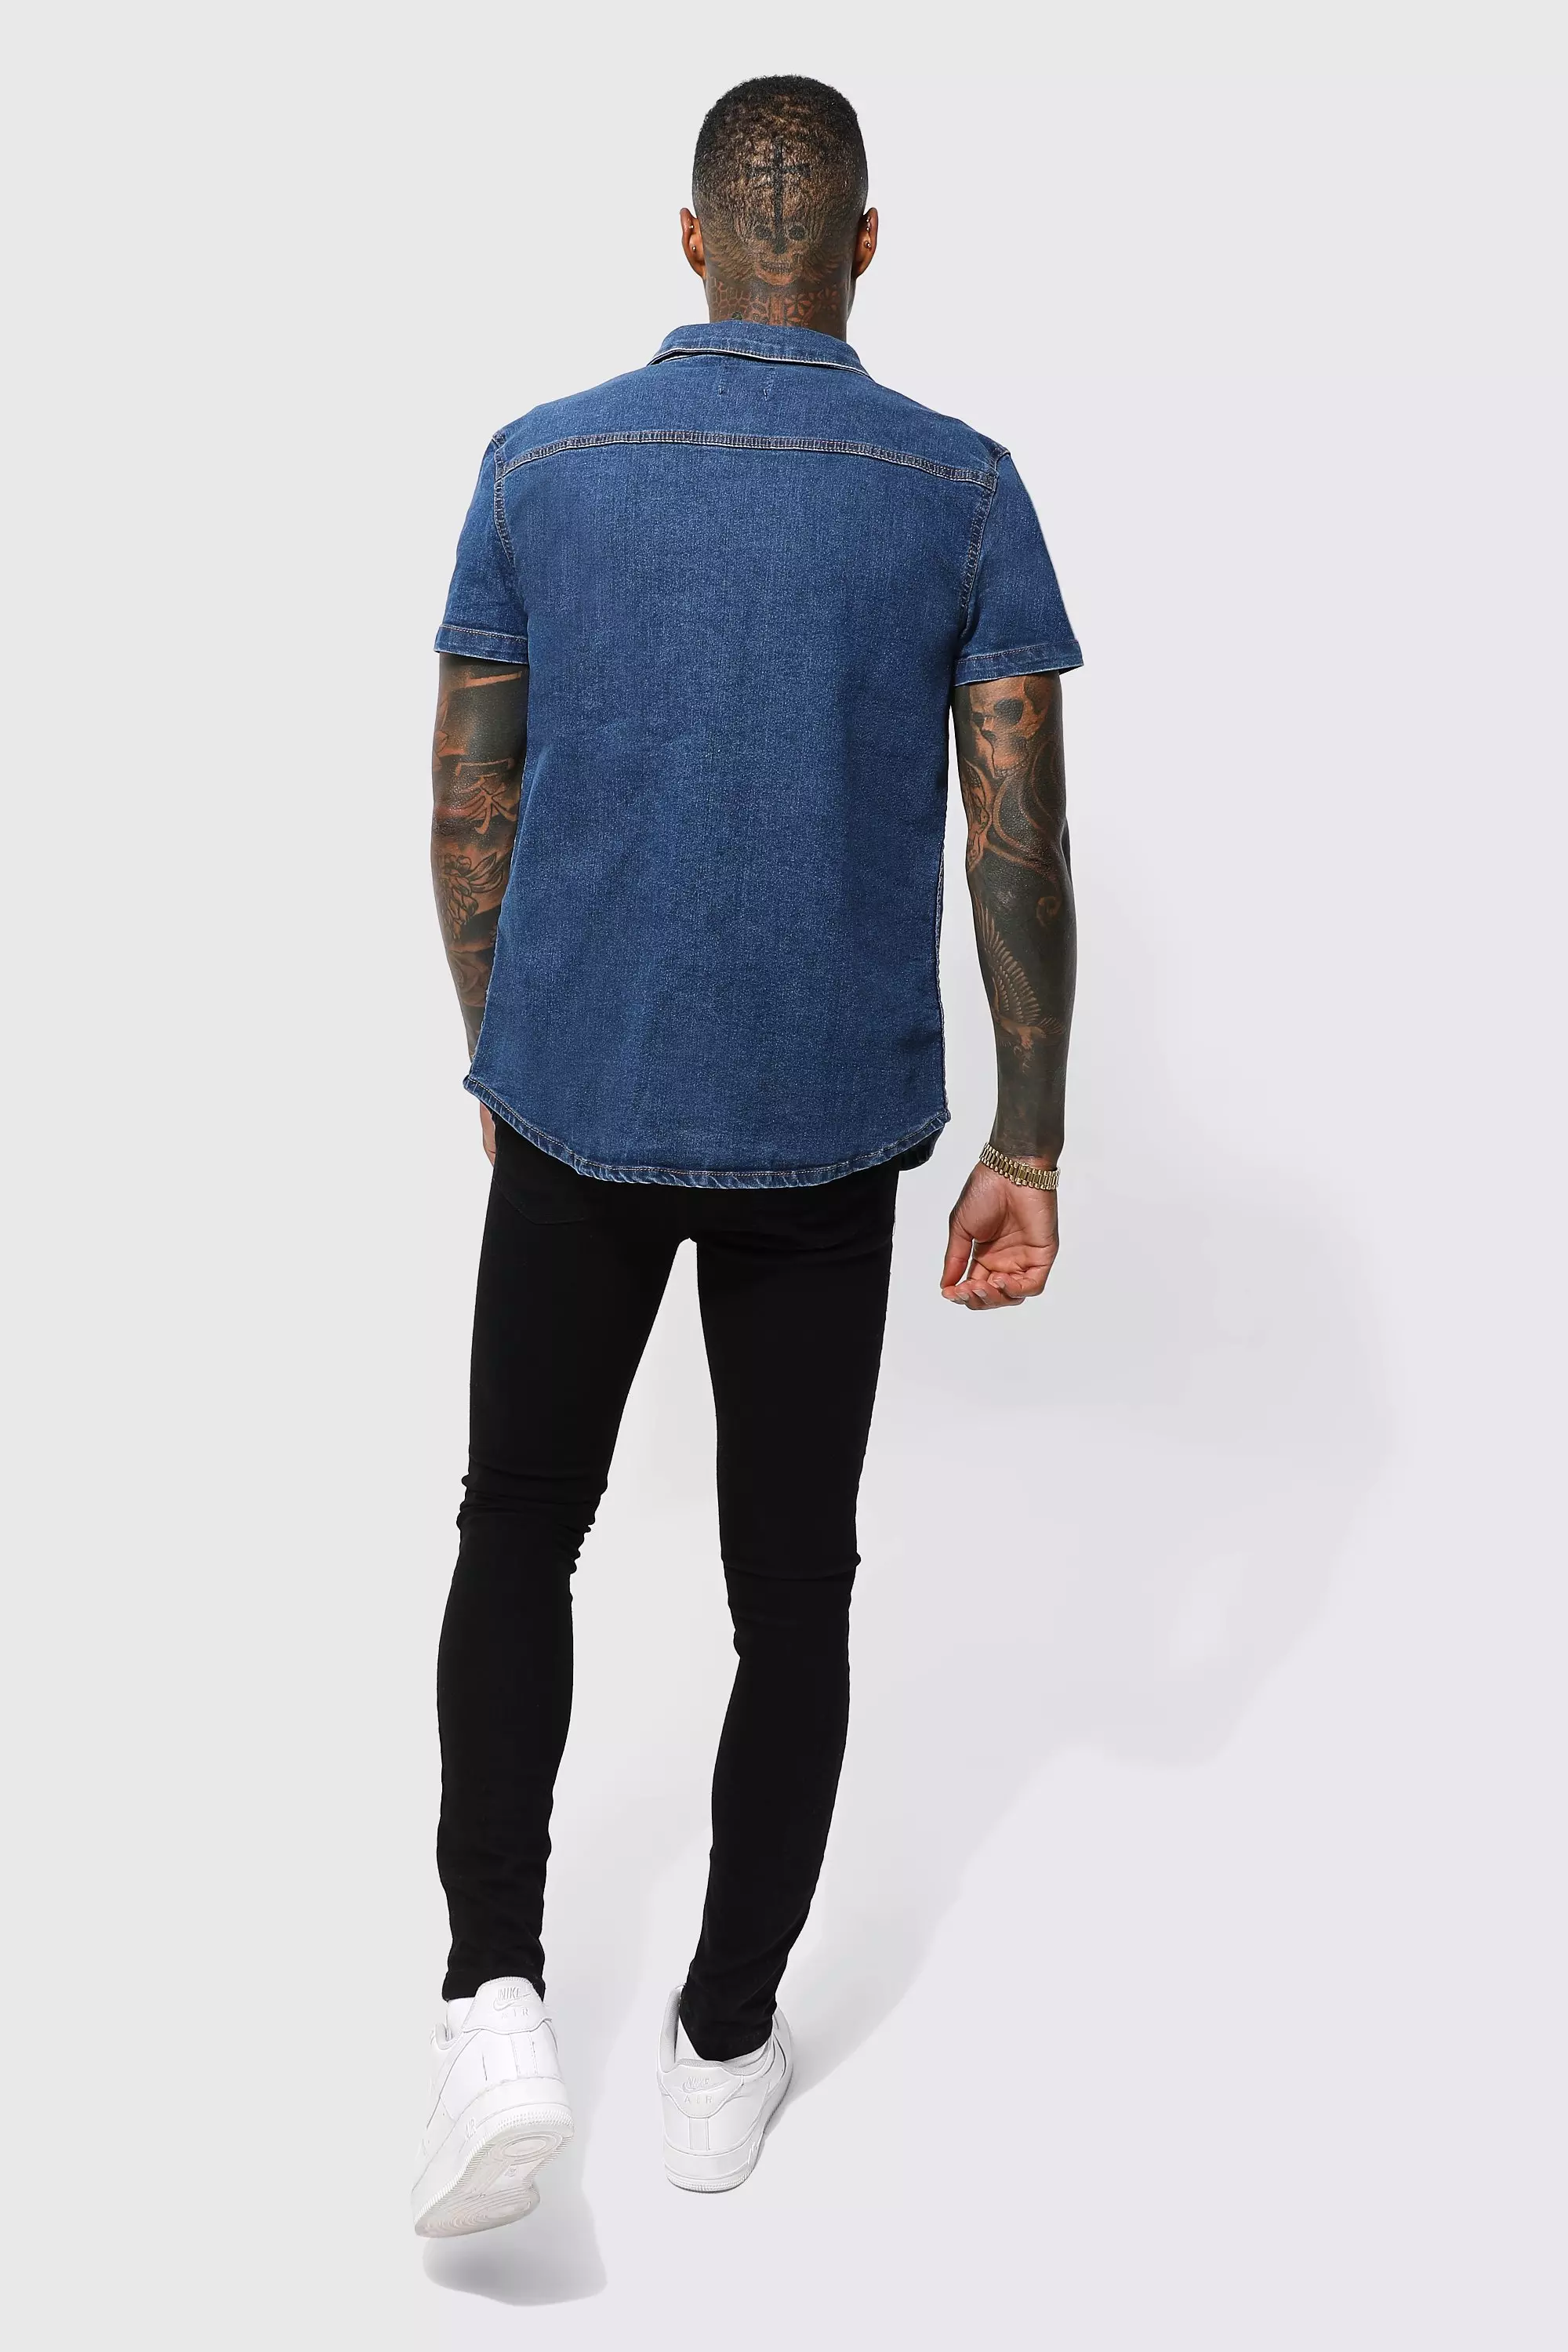 Mens Half Sleeve Denim Shirt/Jeans Shirt